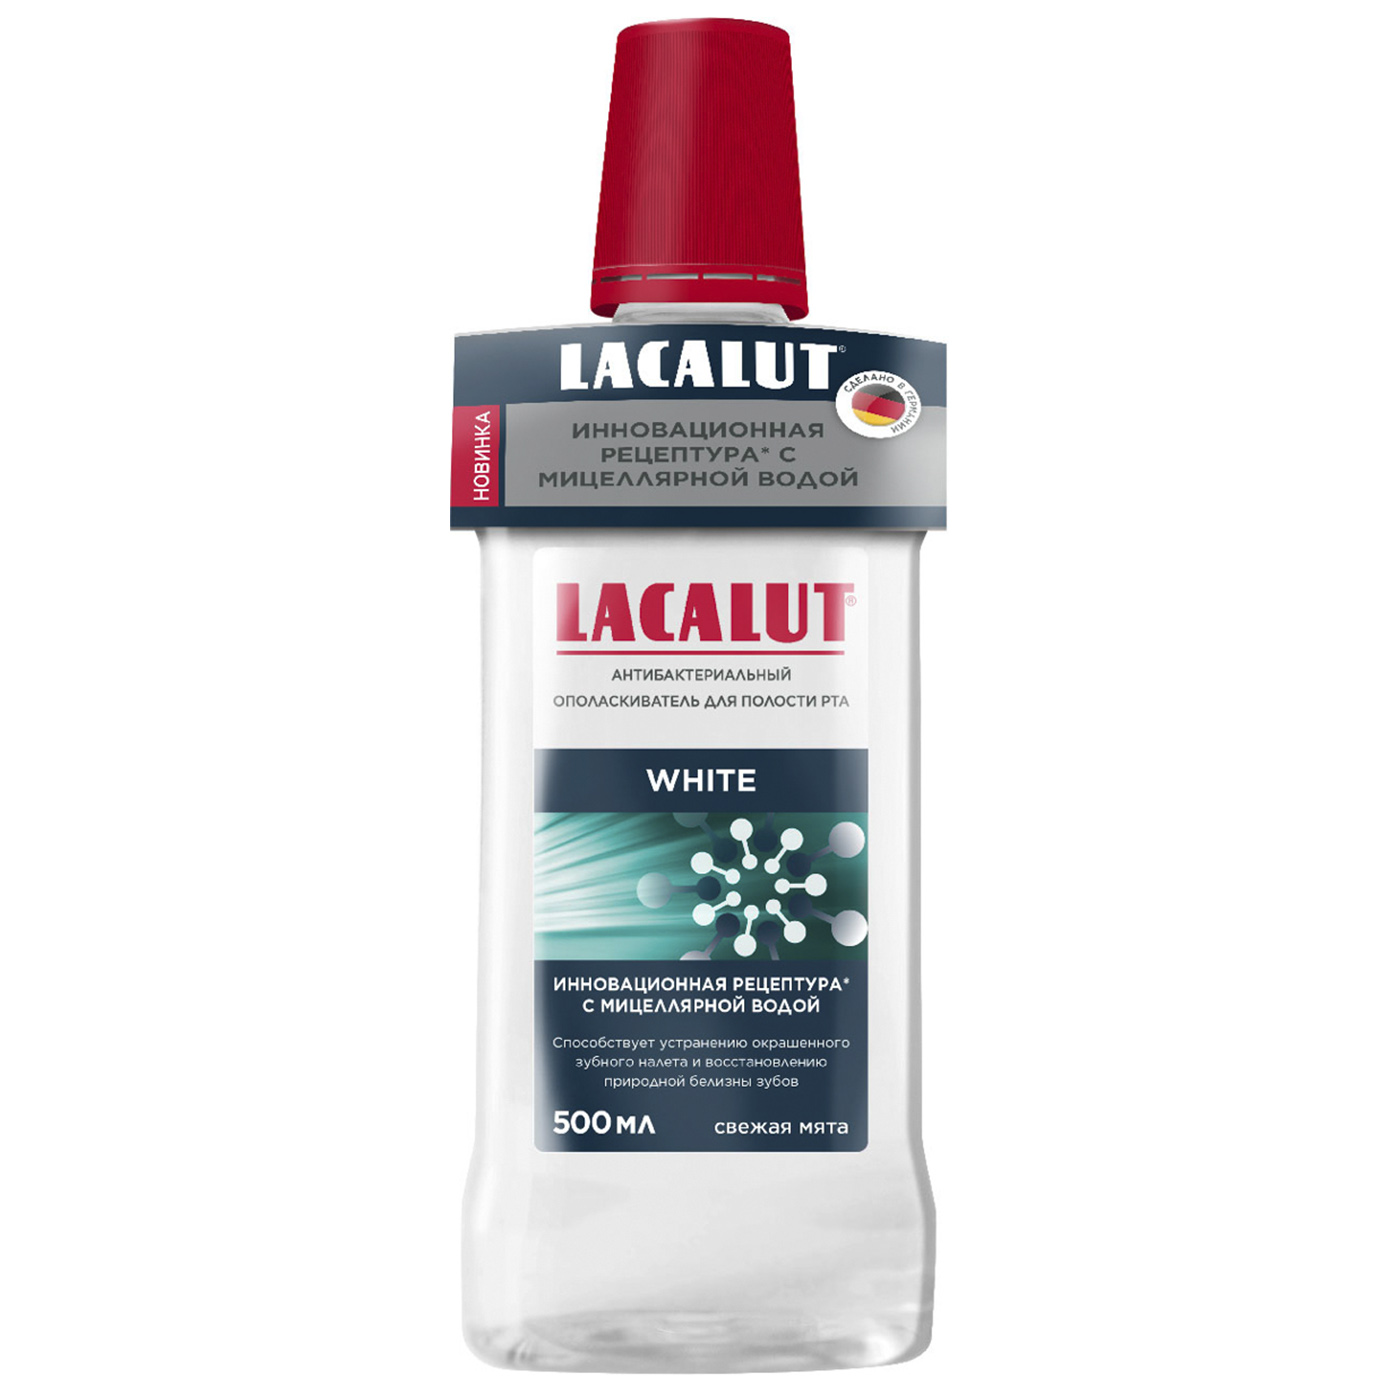 Купить Lacalut White антибактериальный ополаскиватель для полости рта, 500 мл (Lacalut, Ополаскиватели), Германия